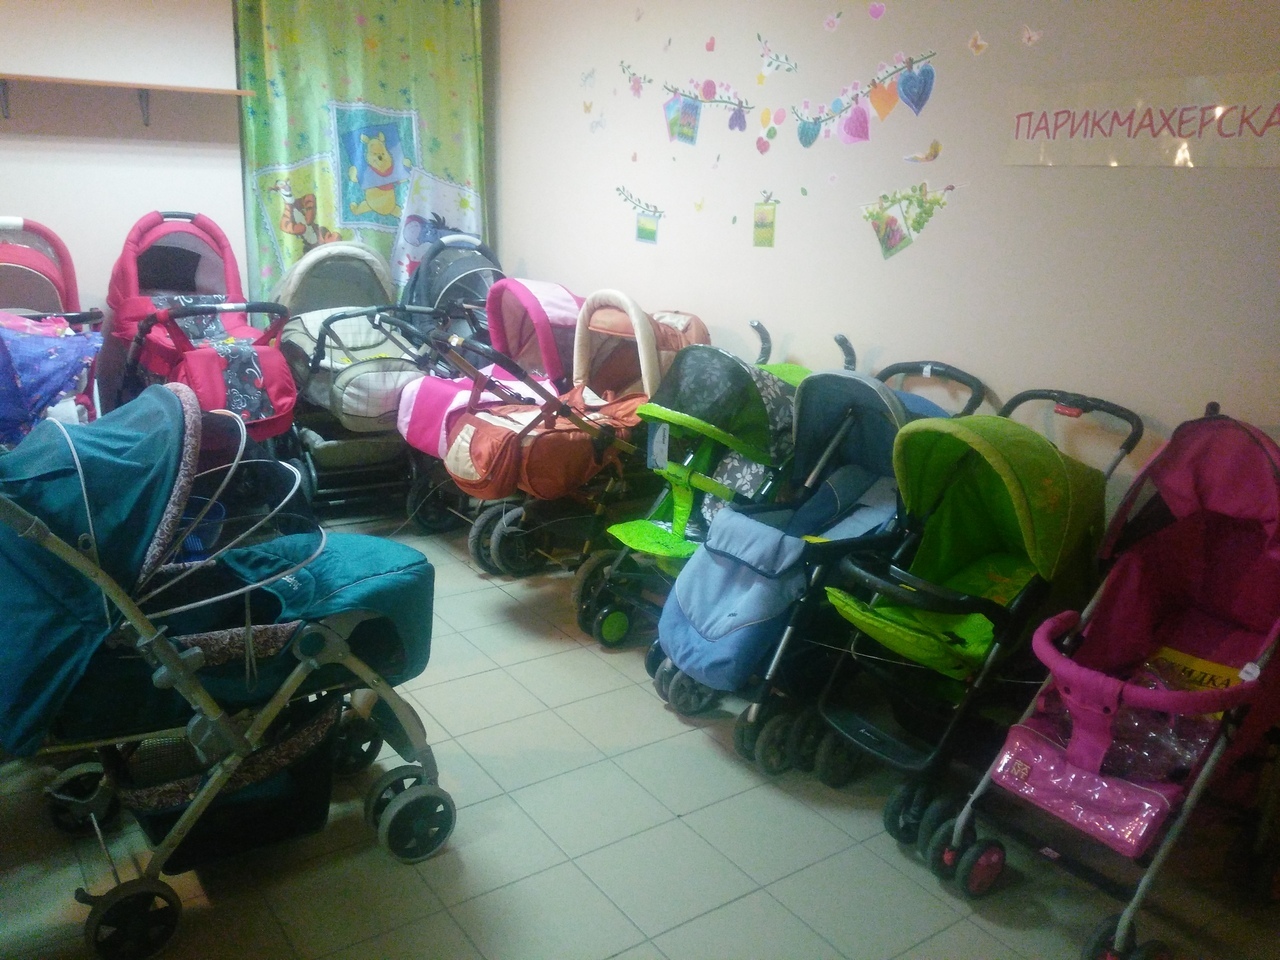 Комиссионный магазин детских колясок